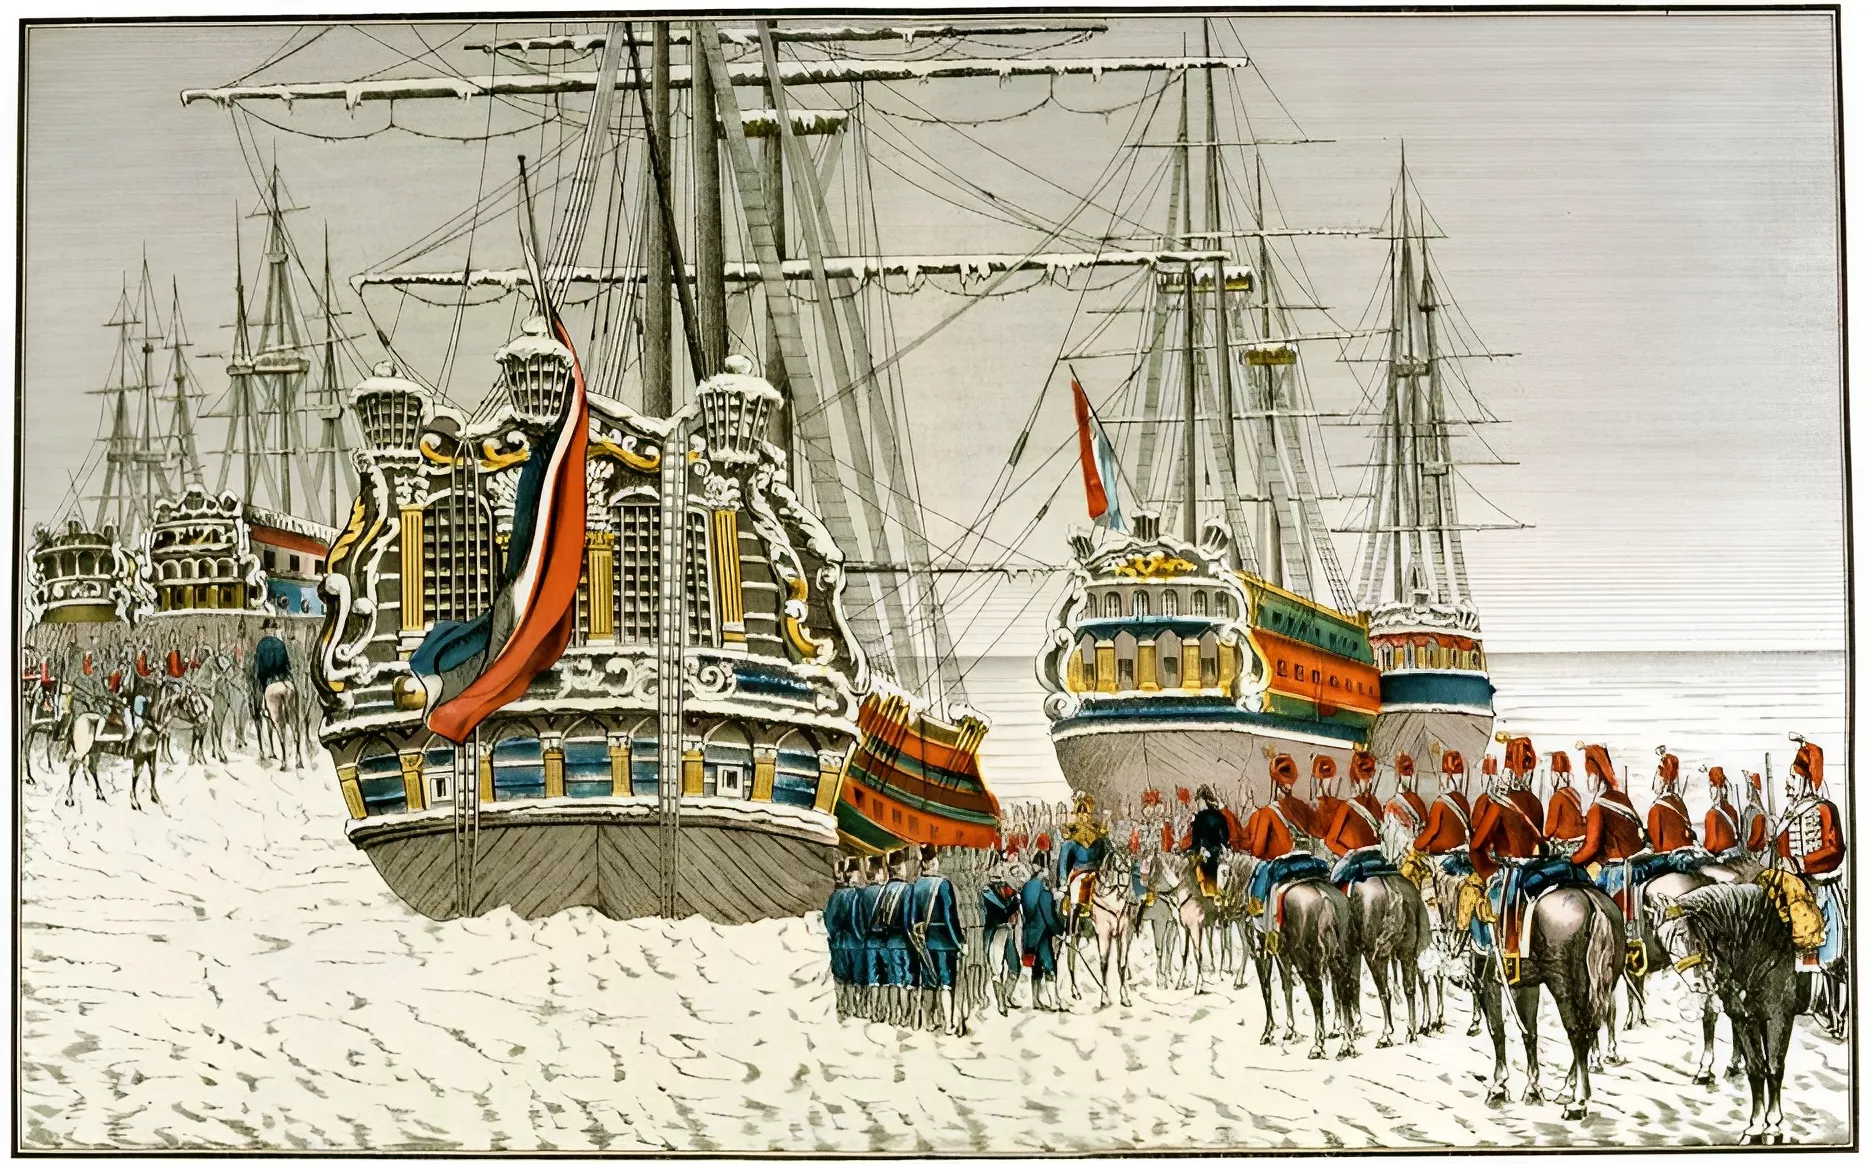 El fred, combinat amb astúcia, va permetre als soldats francesos a cavall derrotar a una flota holandesa